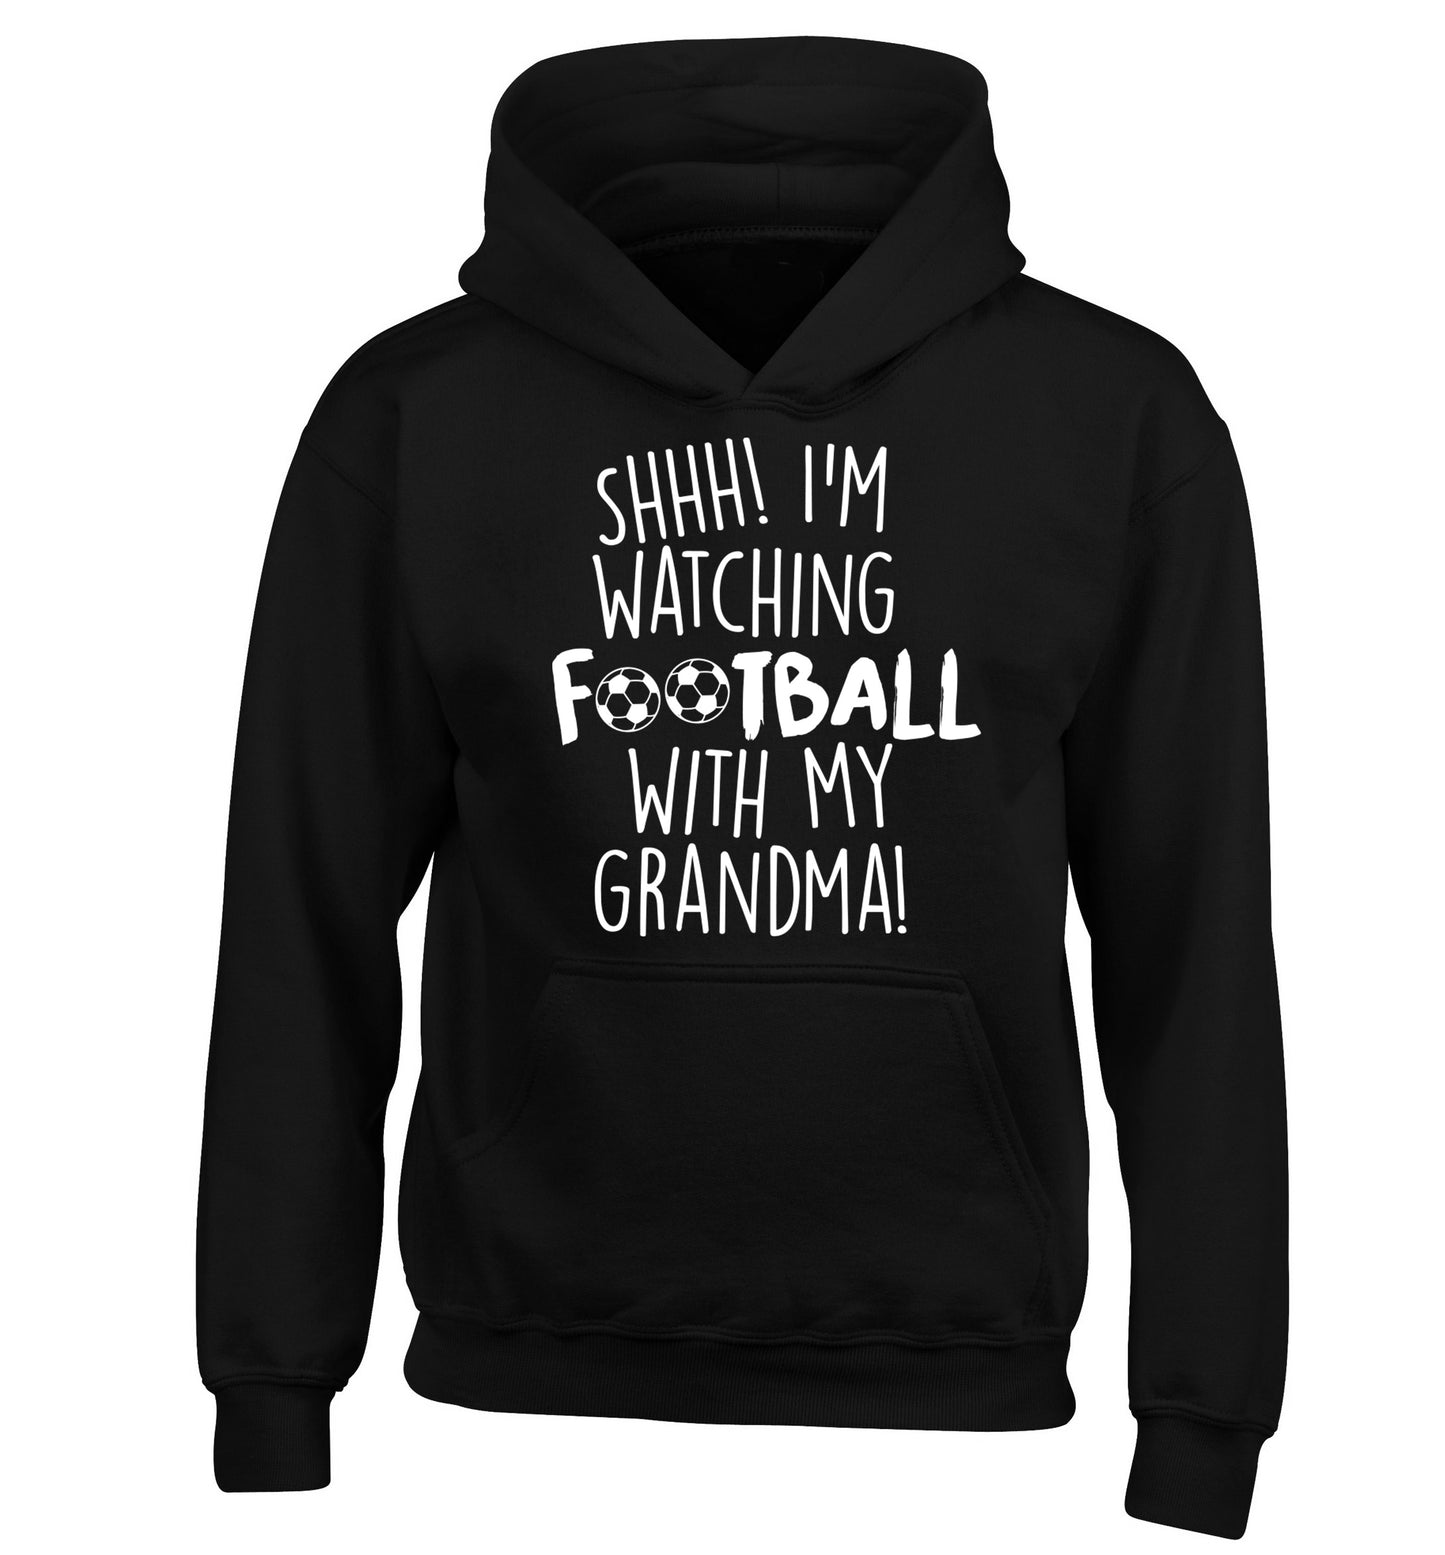 Shhh I'm watching football with my grandma children's black hoodie 12-14 Years